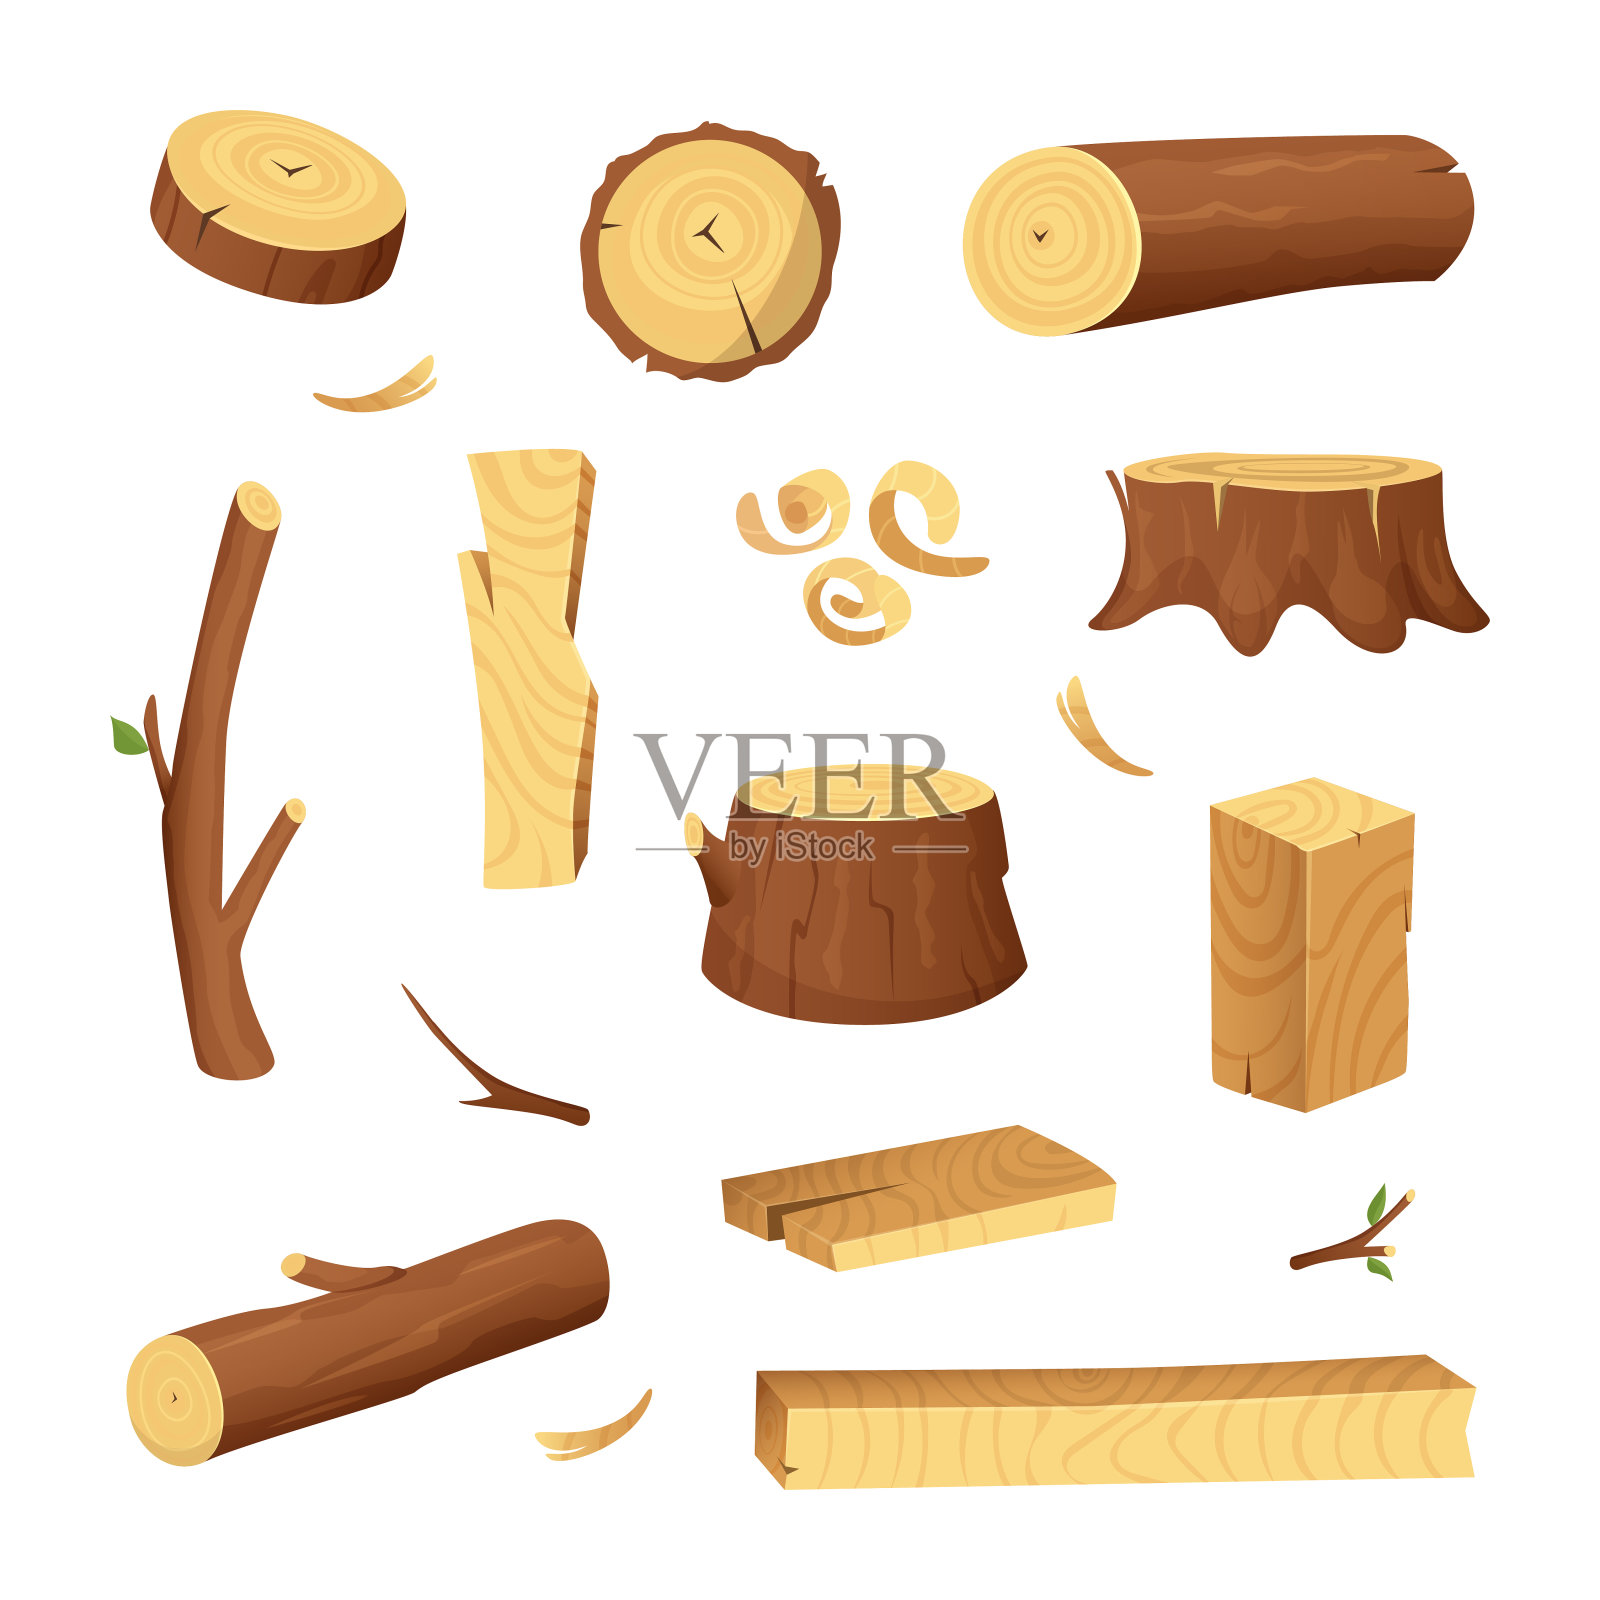 木材工业用材料。树木材,树干。矢量图片设置在卡通风格插画图片素材